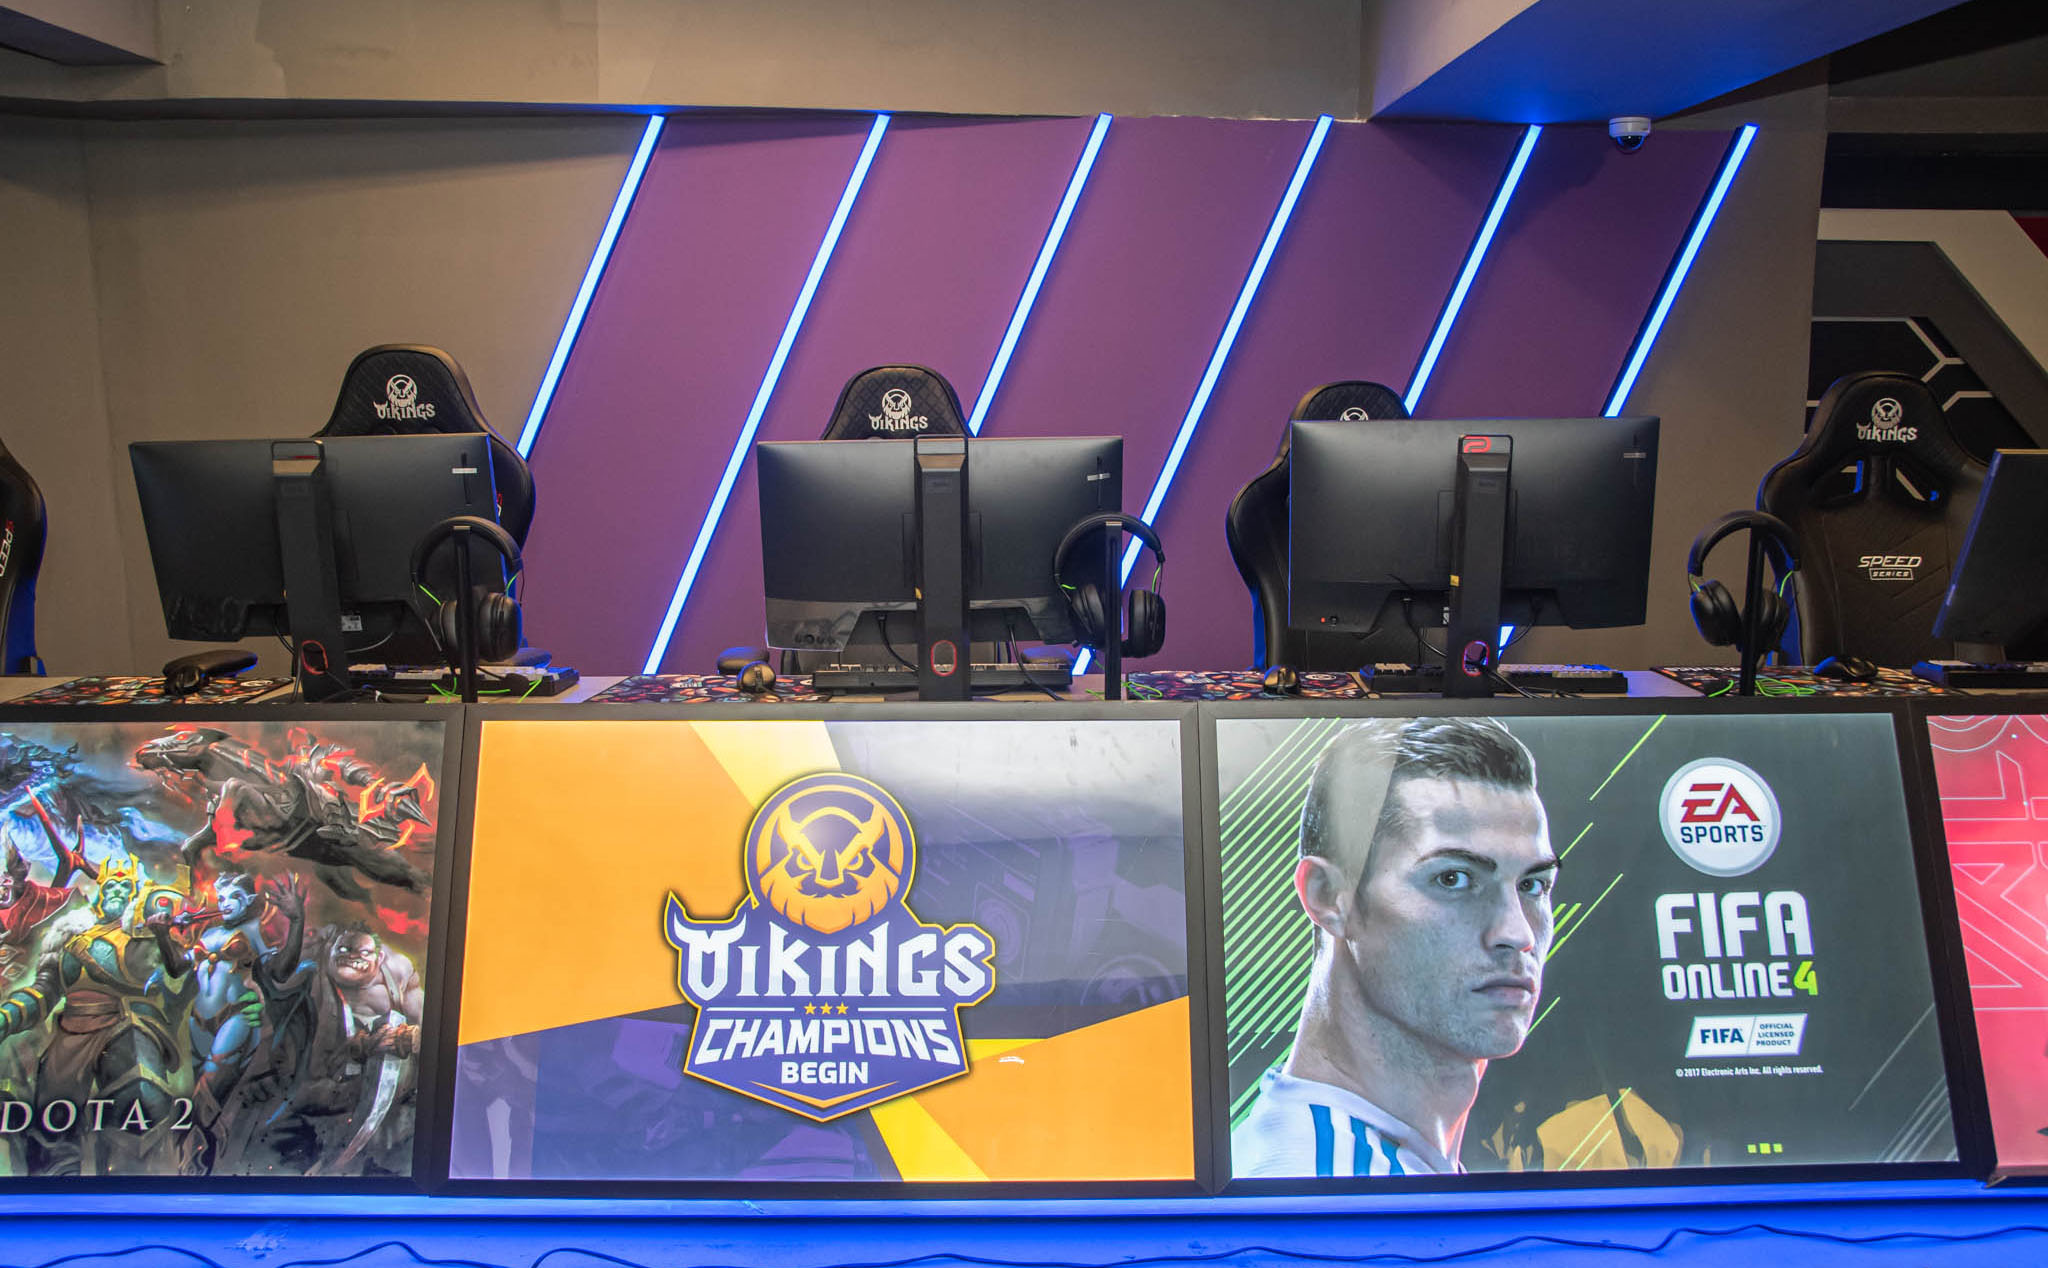 Phòng máy Vikings Esports Arena Hoàng Văn Thụ trang bị 100% CPU Intel chính hãng